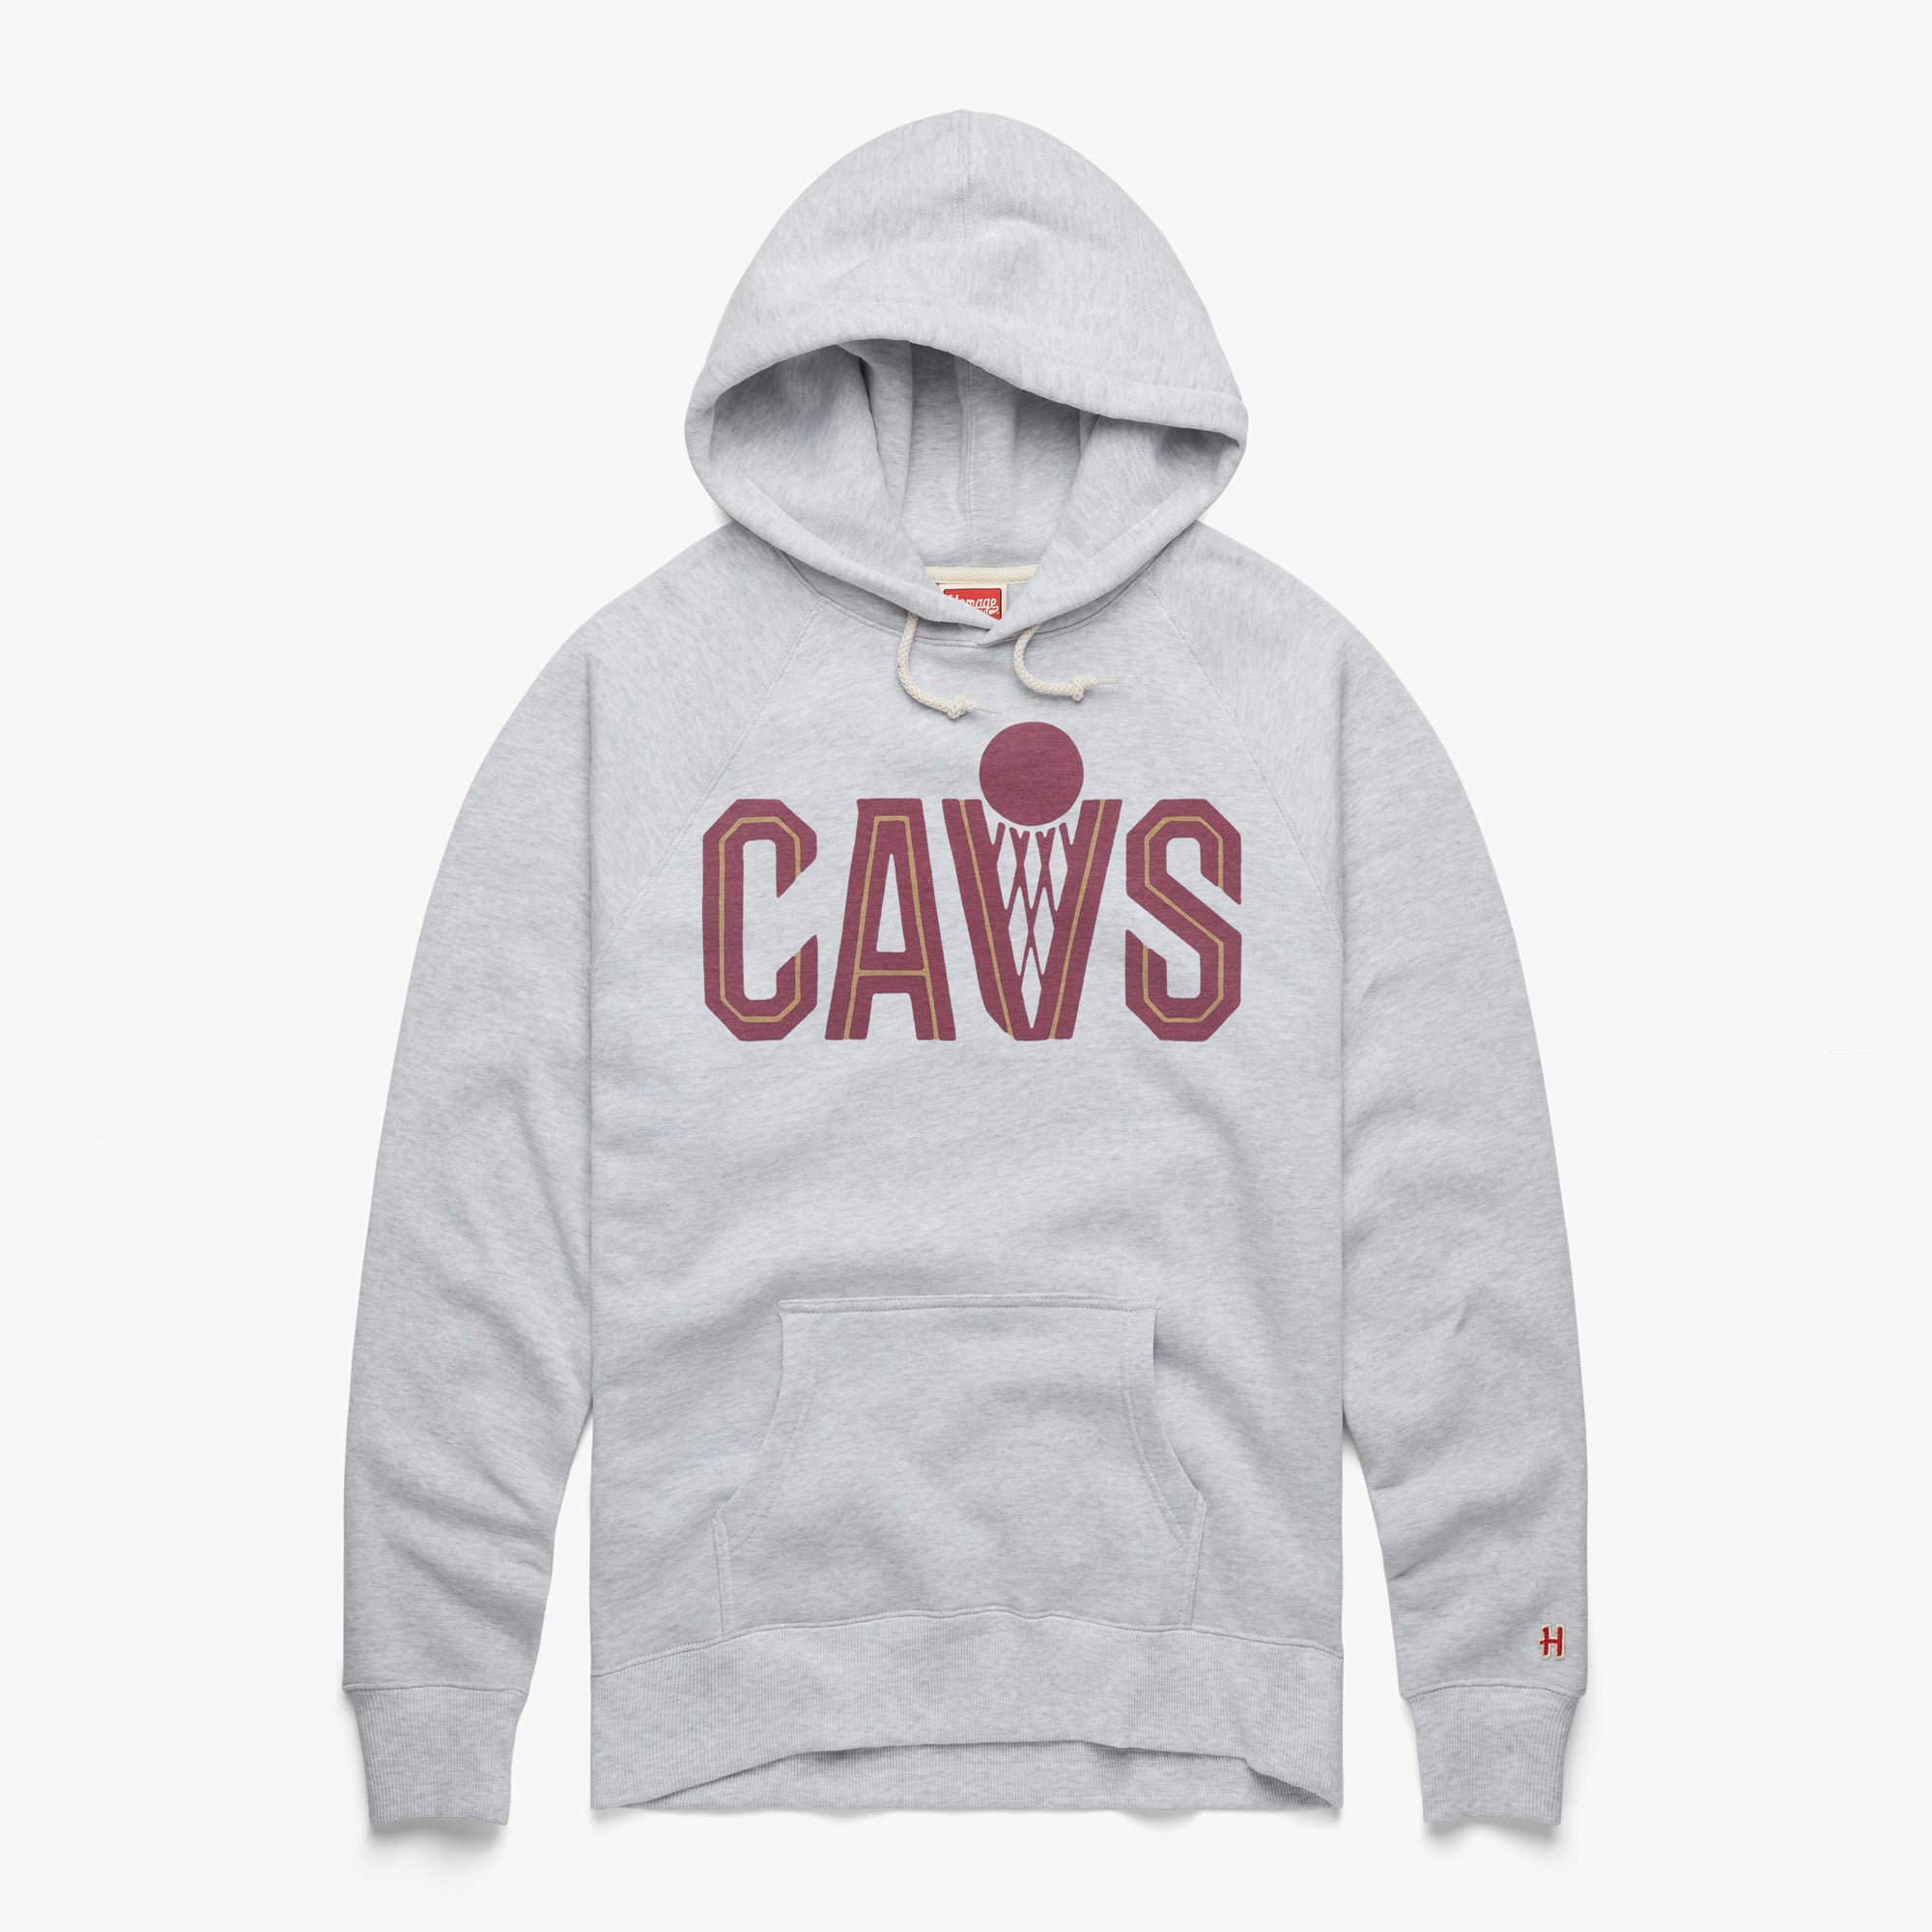 Cavs Hoodie | Retro Cleveland Cavaliers Hooded Sweatshirt – HOMAGE